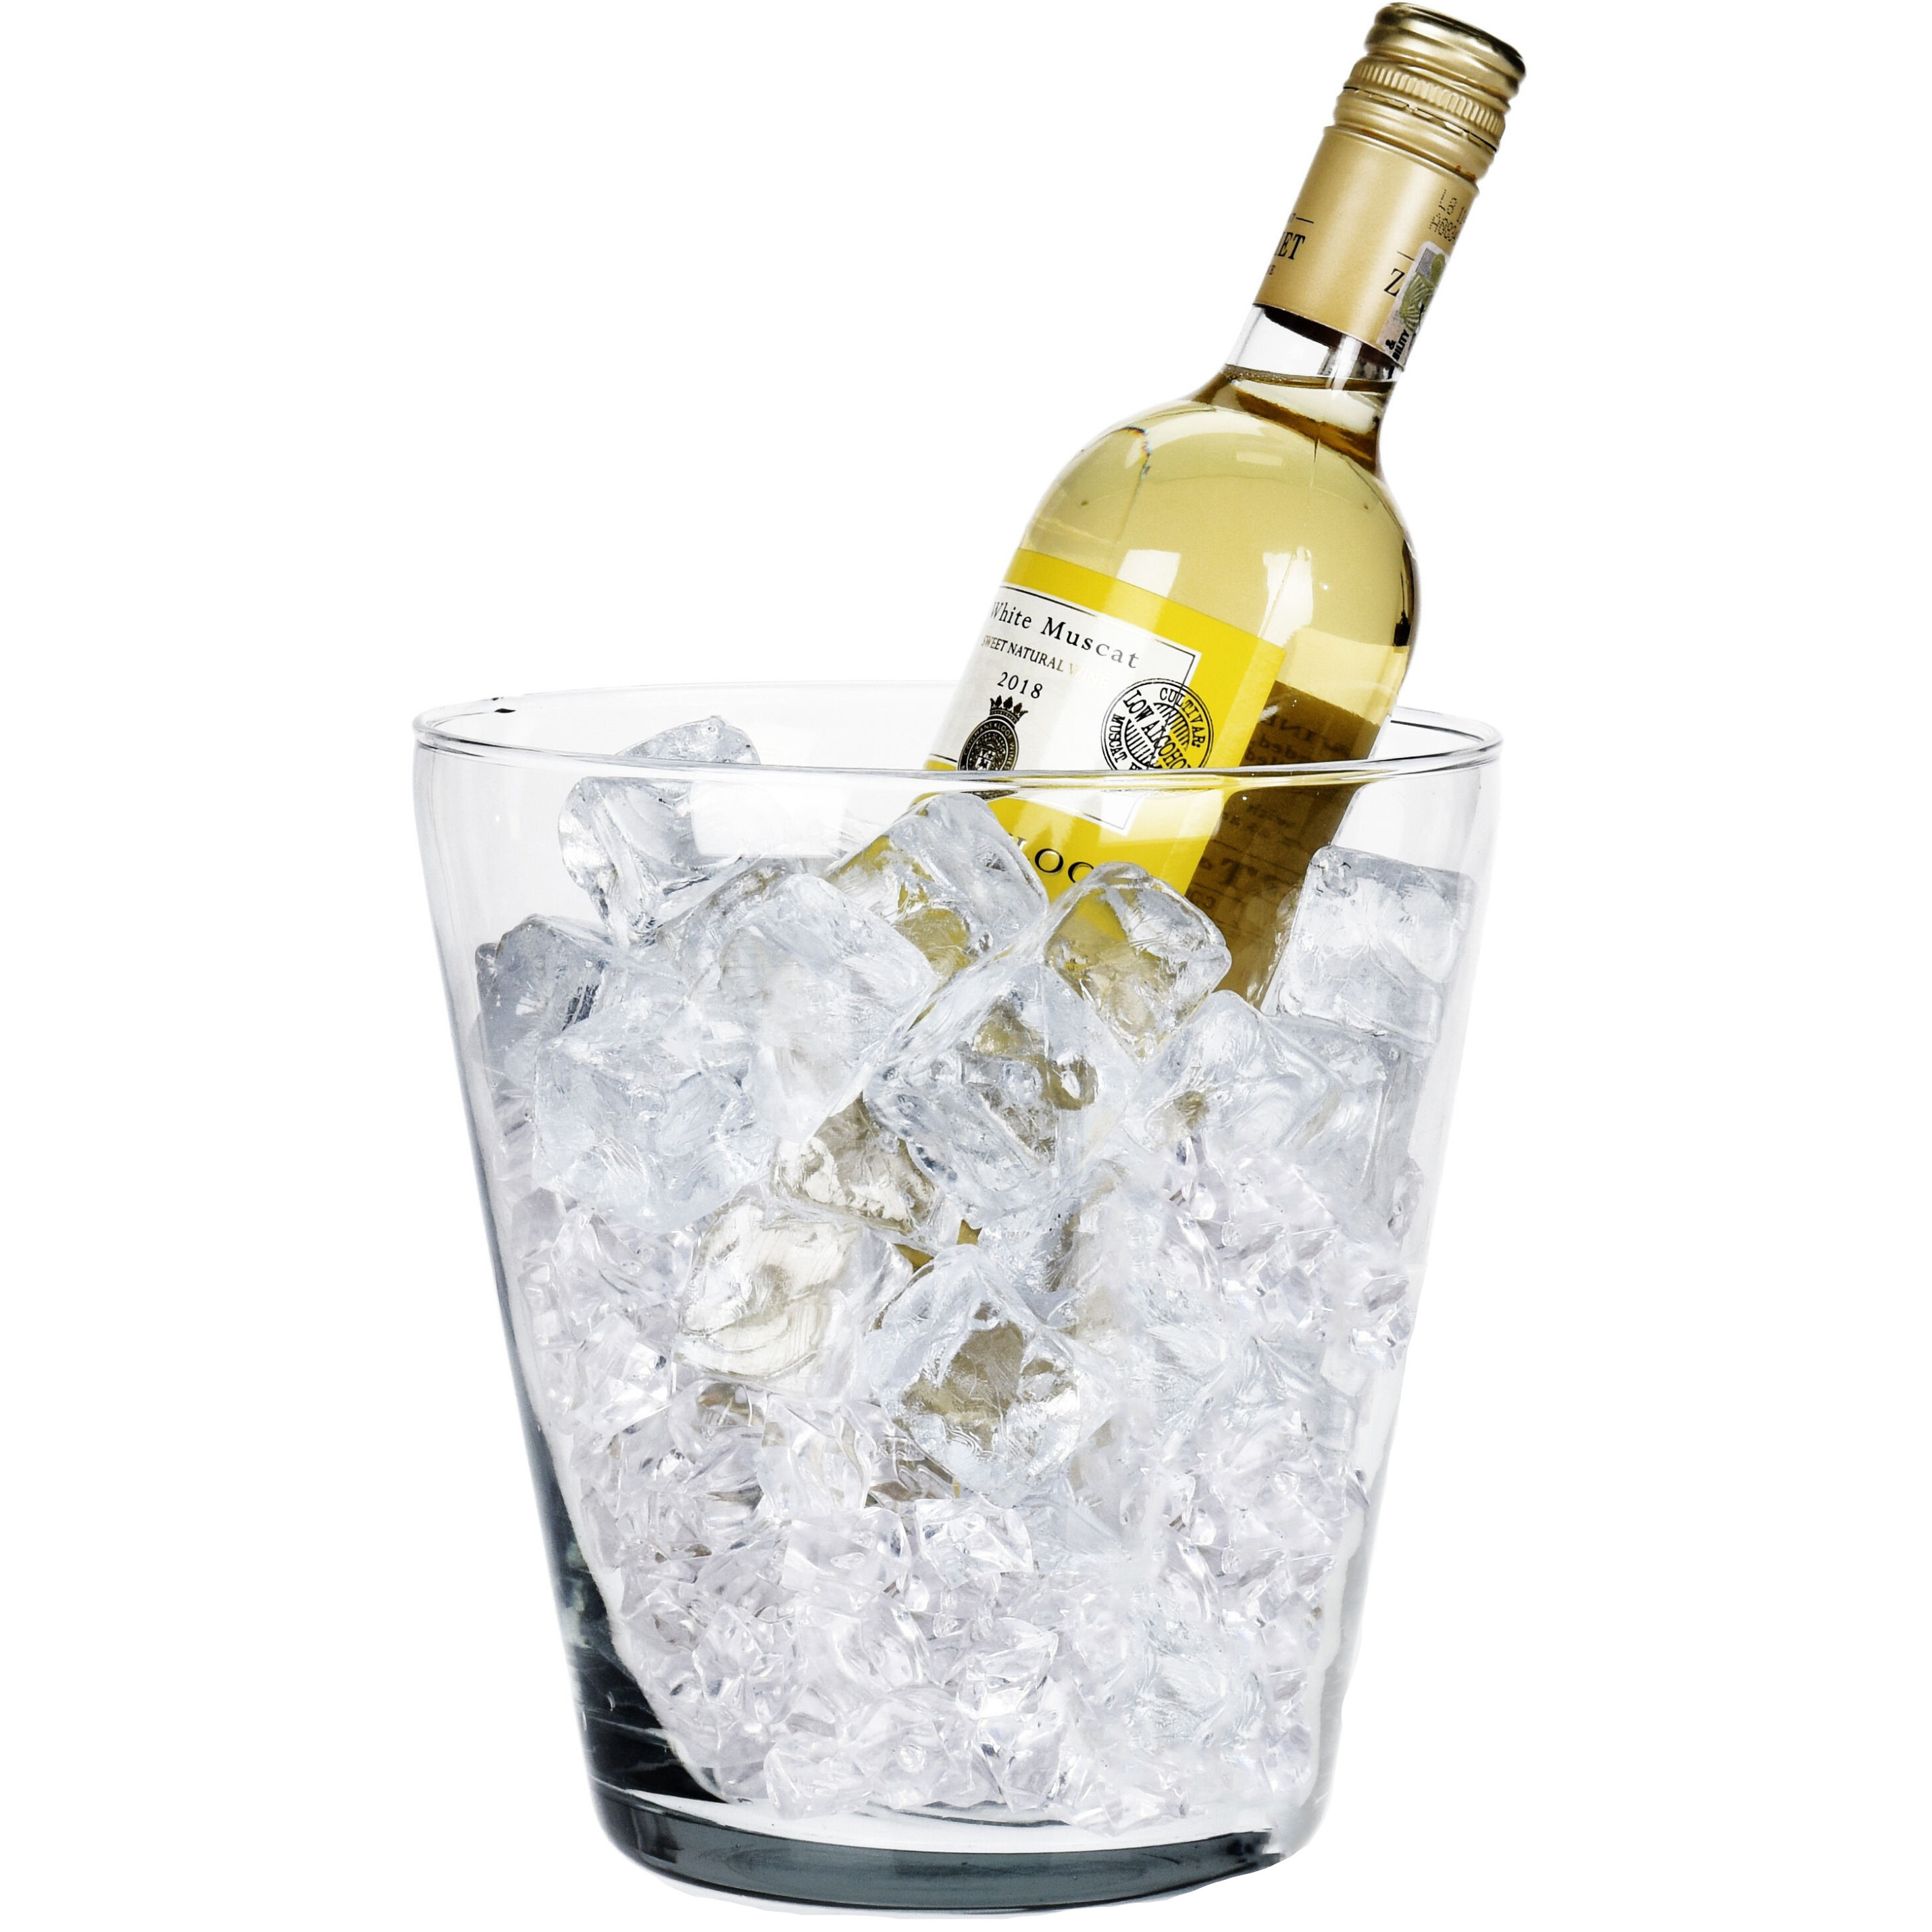 Wijnfles koeler-wijnkoeler transparante glas 19 x 20 cm